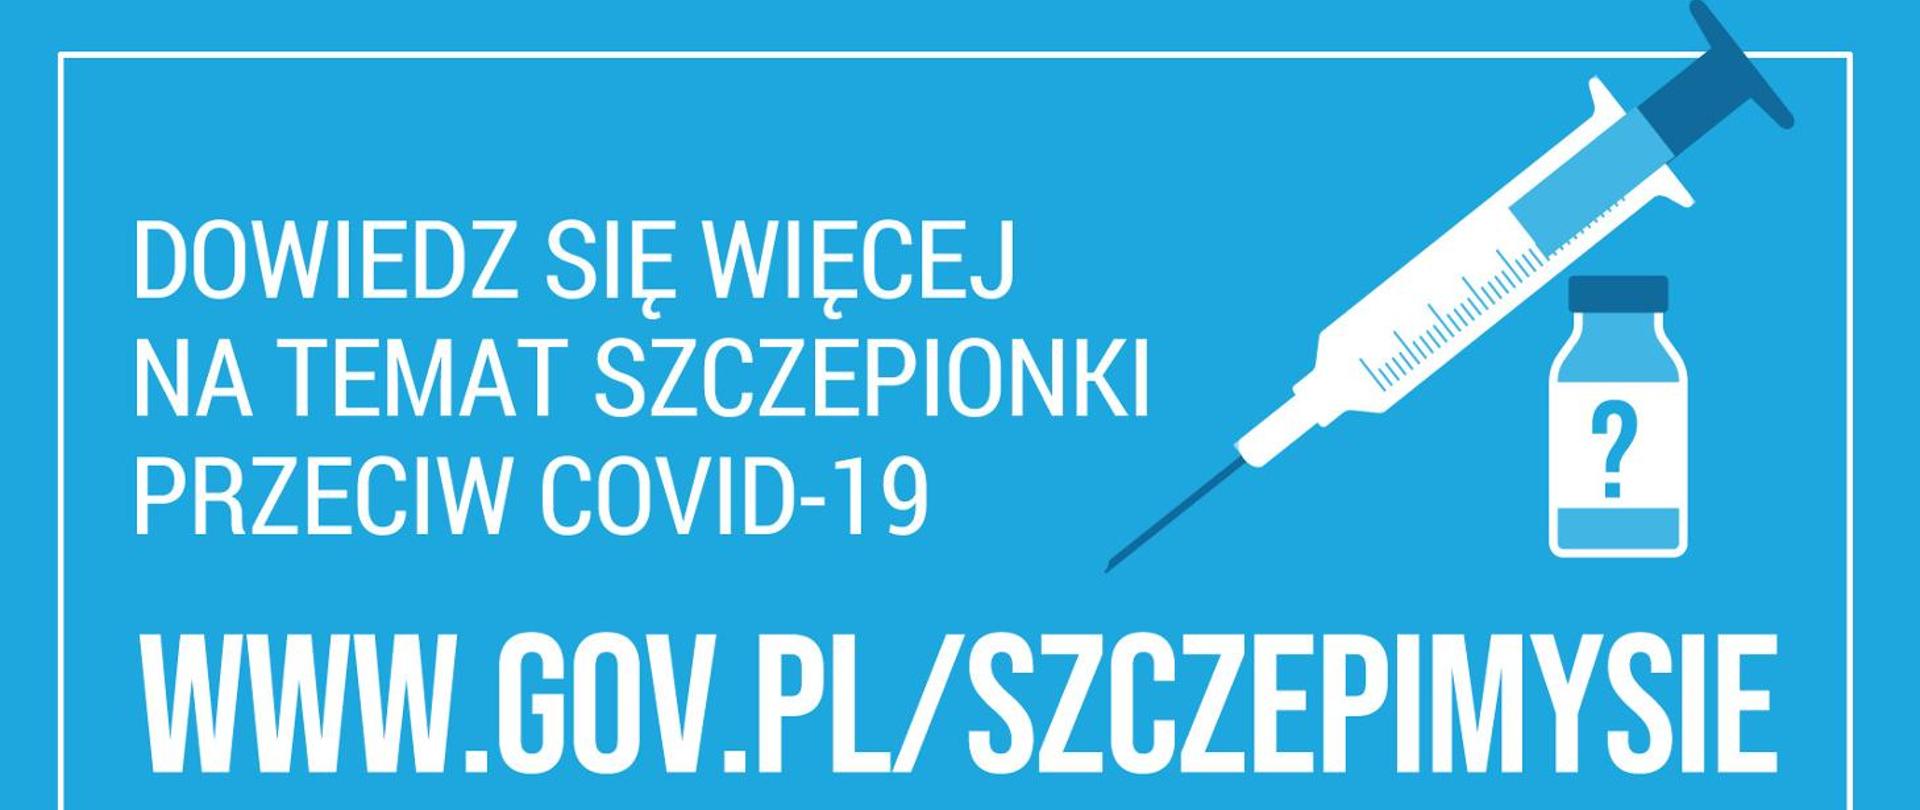 Ulotka na niebieskim tle przedstawiająca strzykawkę i szczepionkę oraz dane o programie dowiedz się więcej na temat szczepionki przeciw COVID-19 i adres strony internetowej.